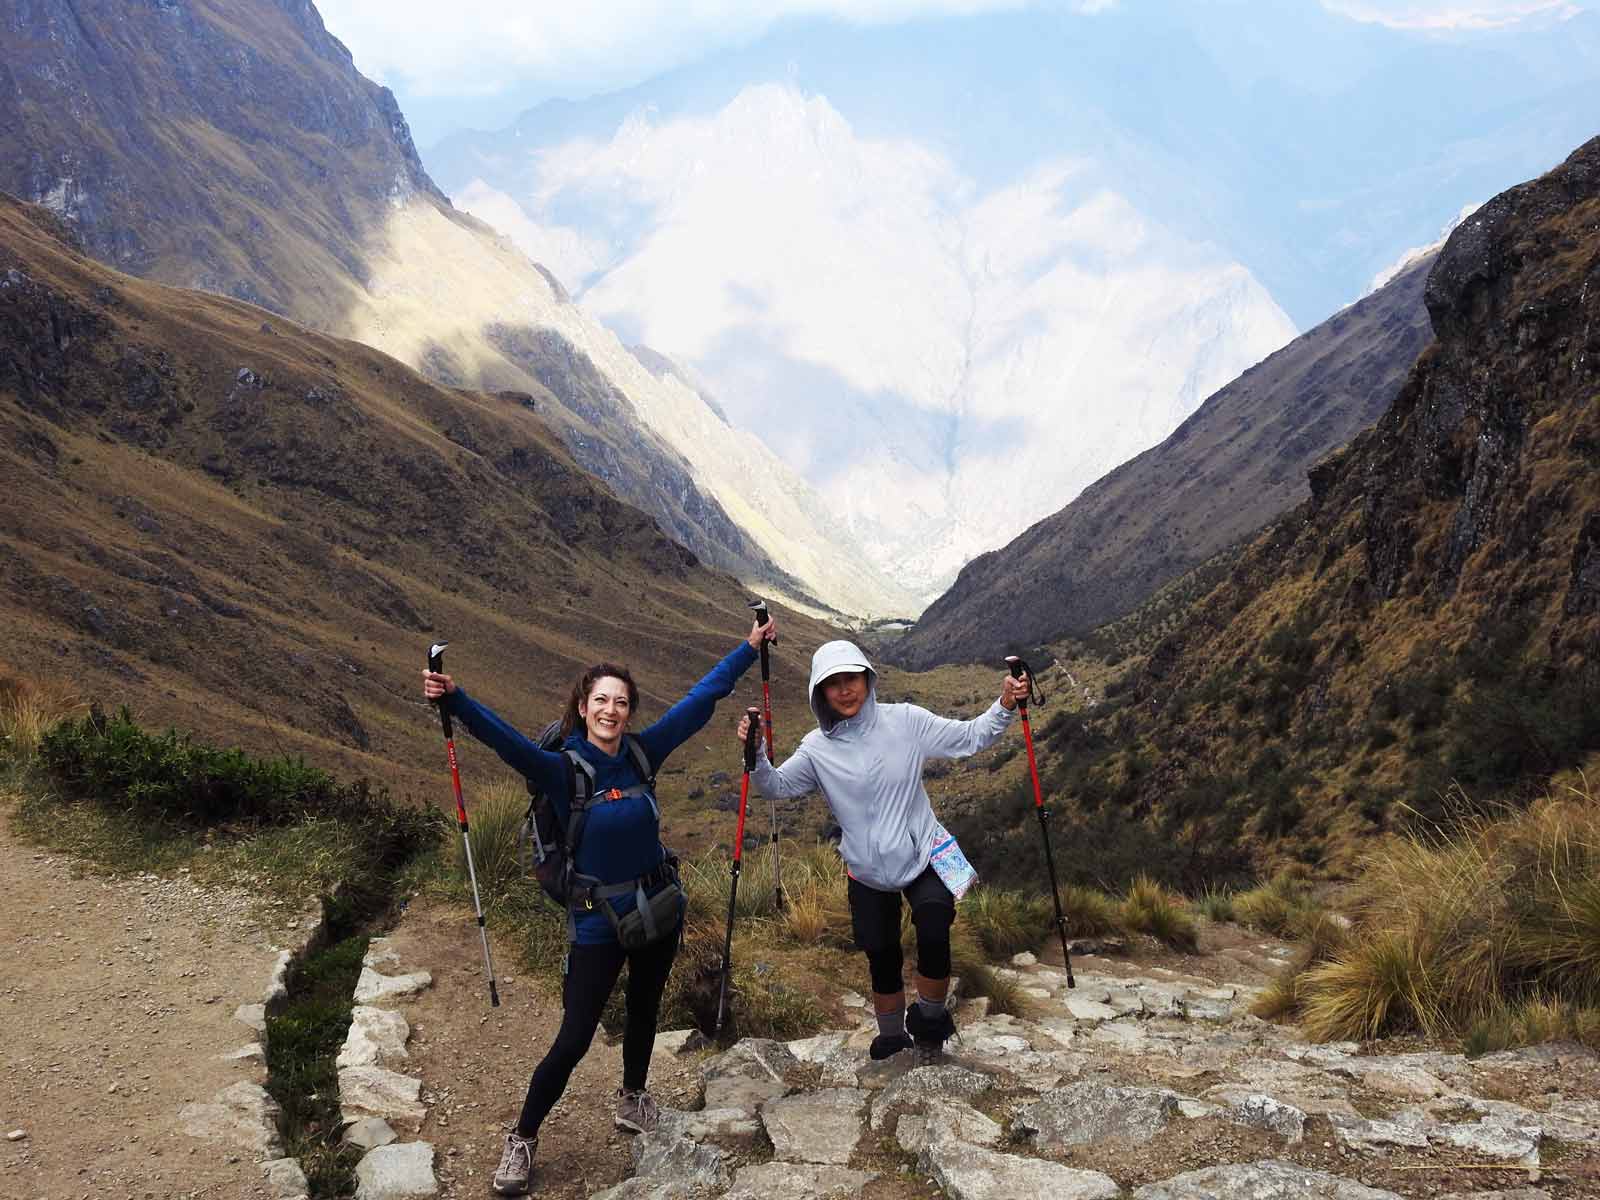 Day 2: Trekking  “Wayllabamba to Pacaymayuc/ Runkuraqay”